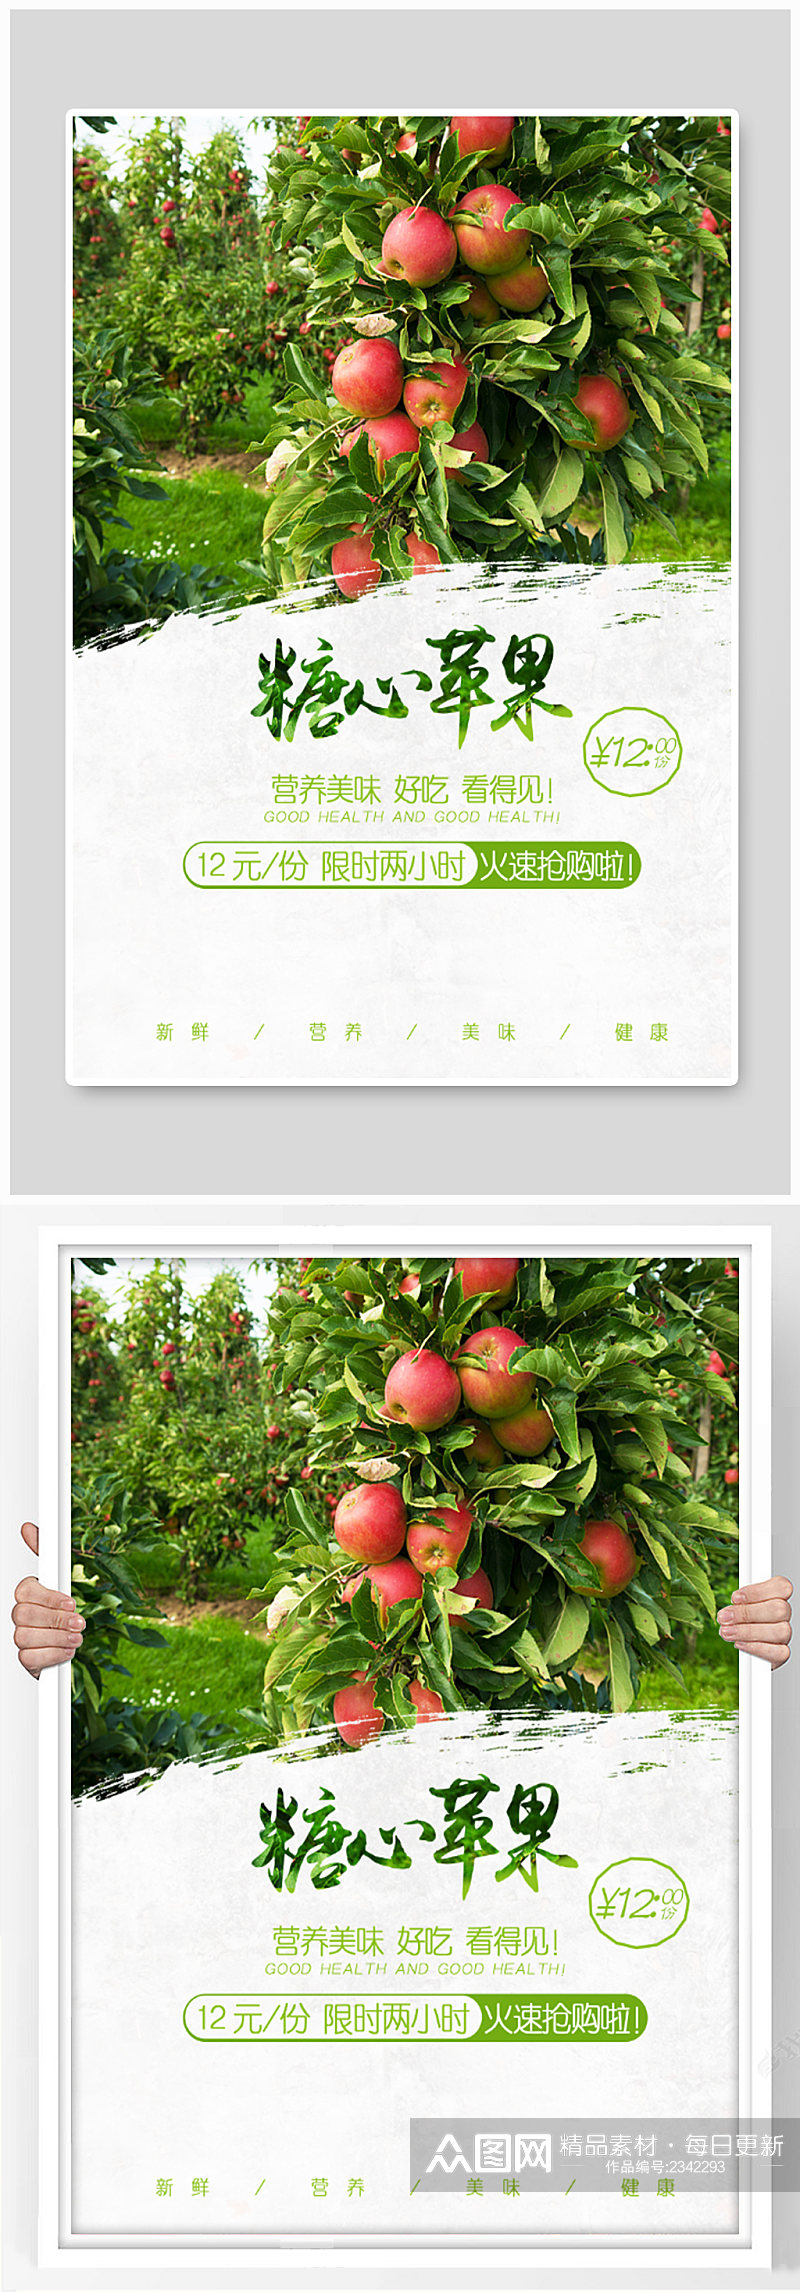 糖心苹果水果店广告素材